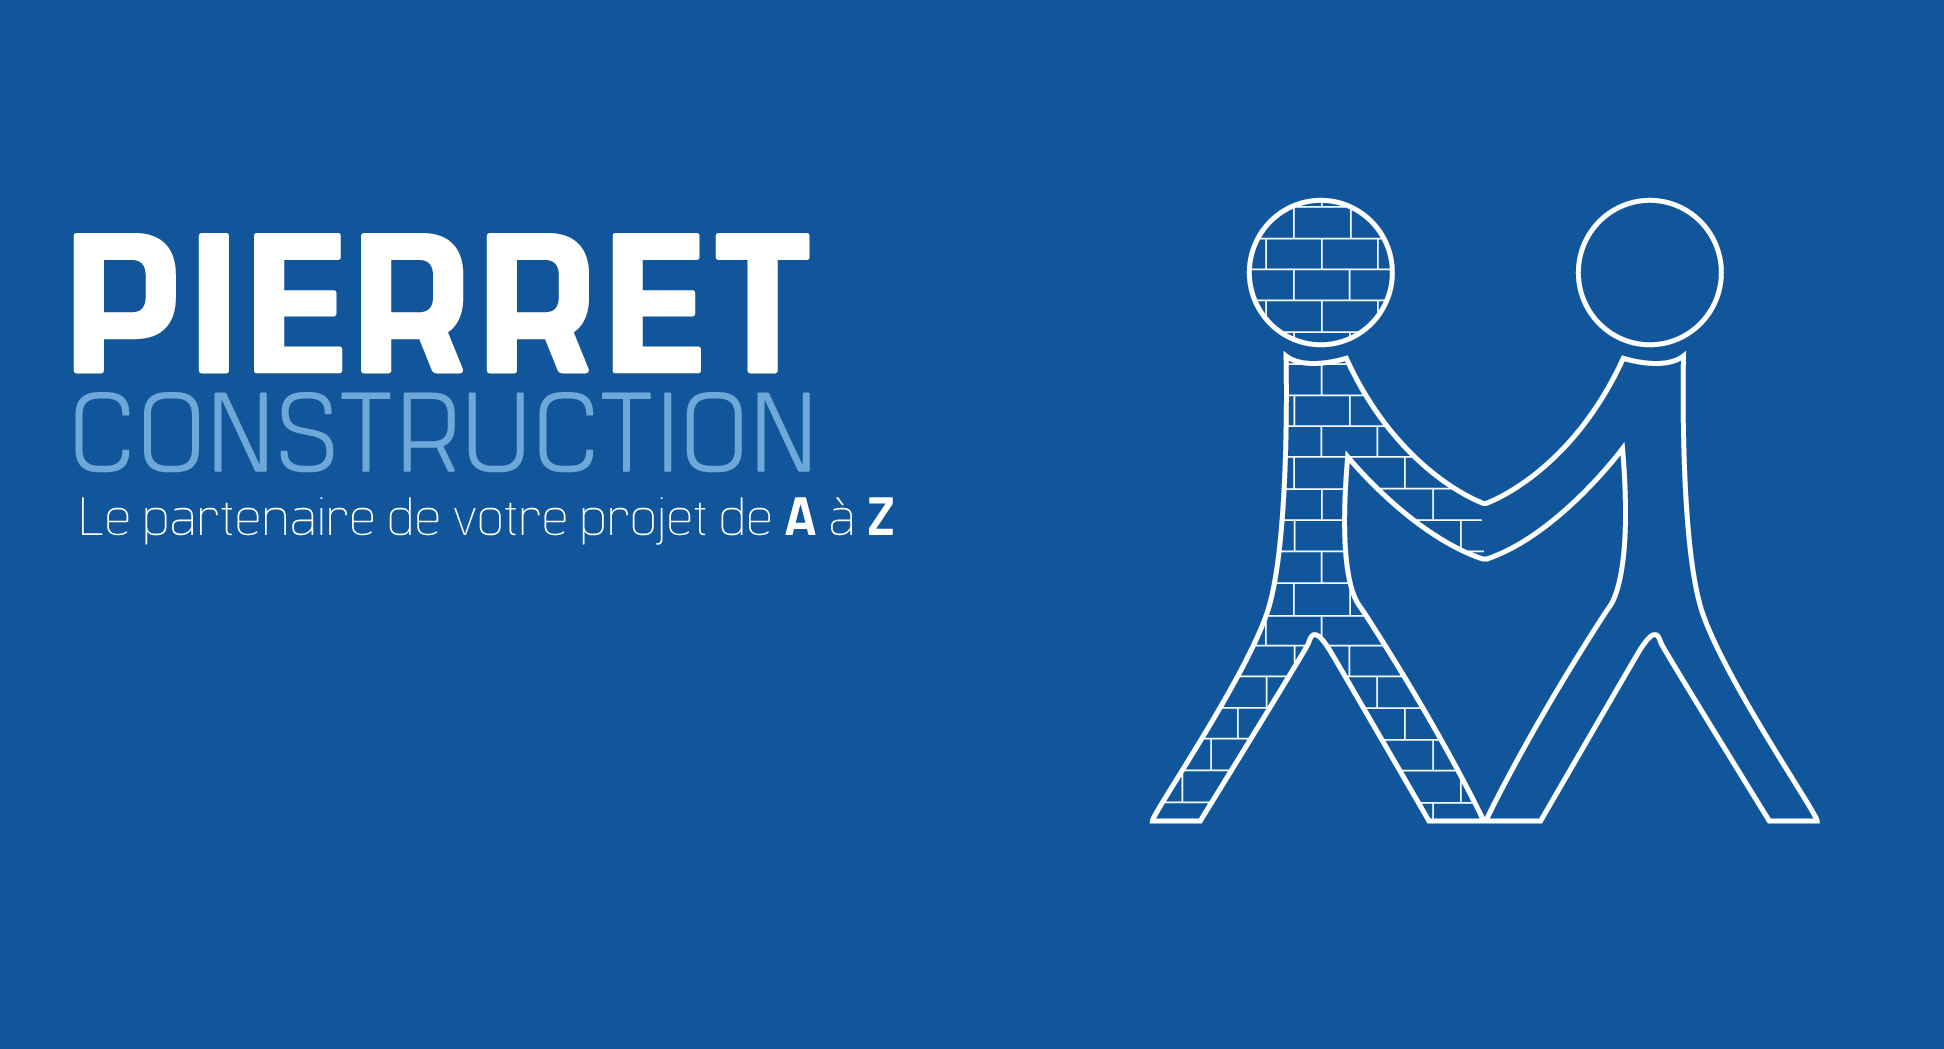 Pierret Construction - Le partenaire de votre projet de A à Z